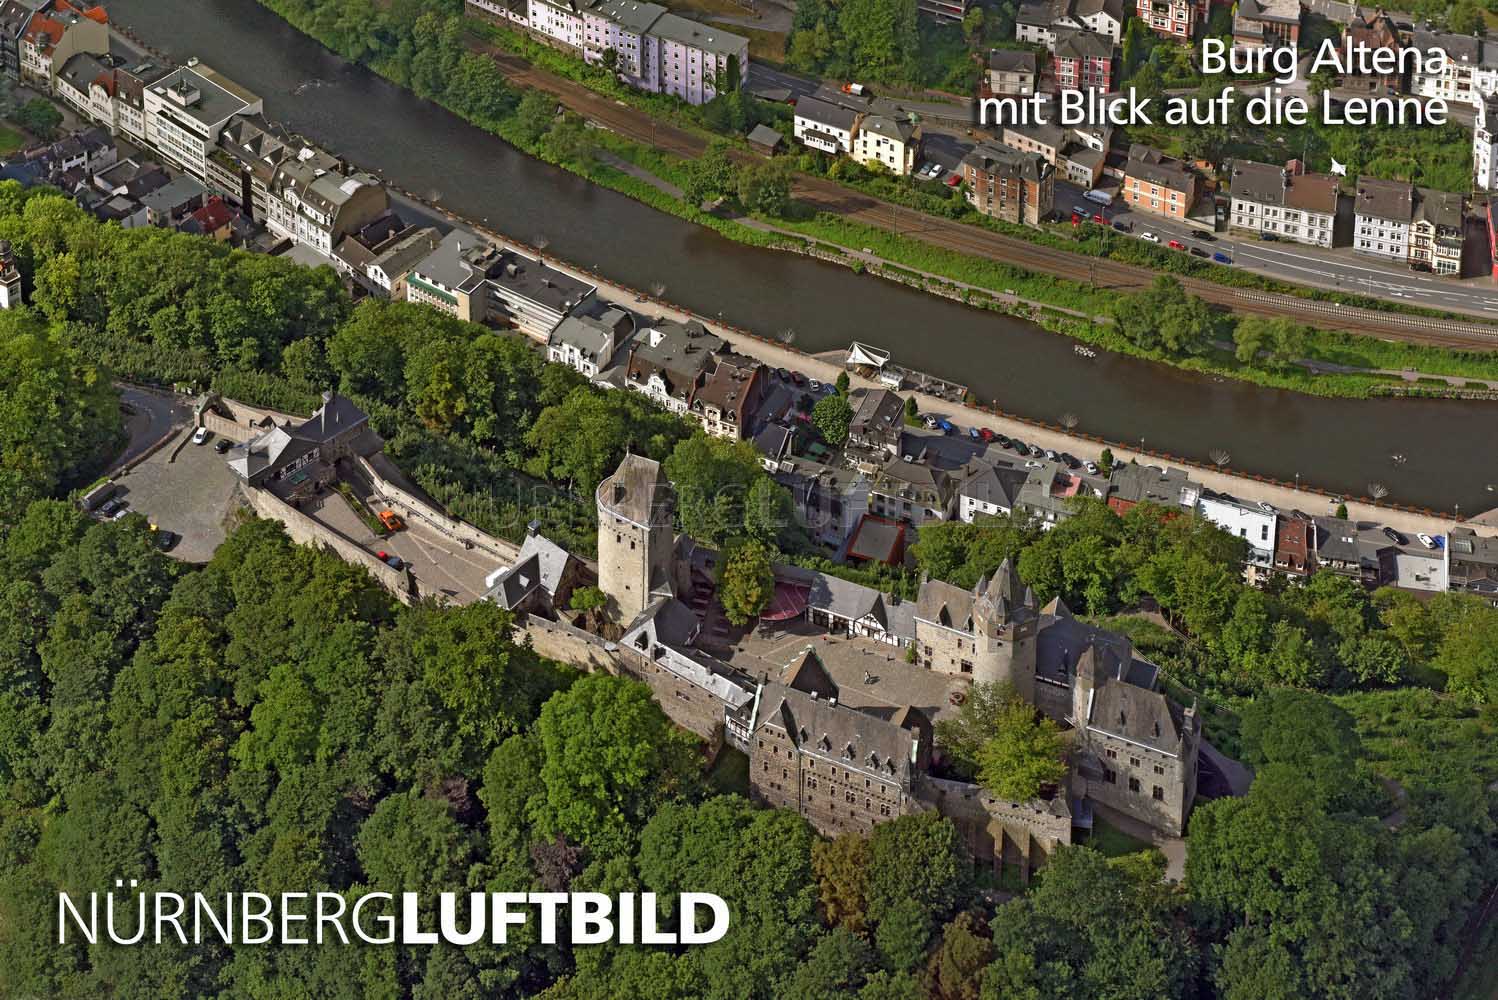 Burg Altena mit Blick auf die Lenne, Luftbild